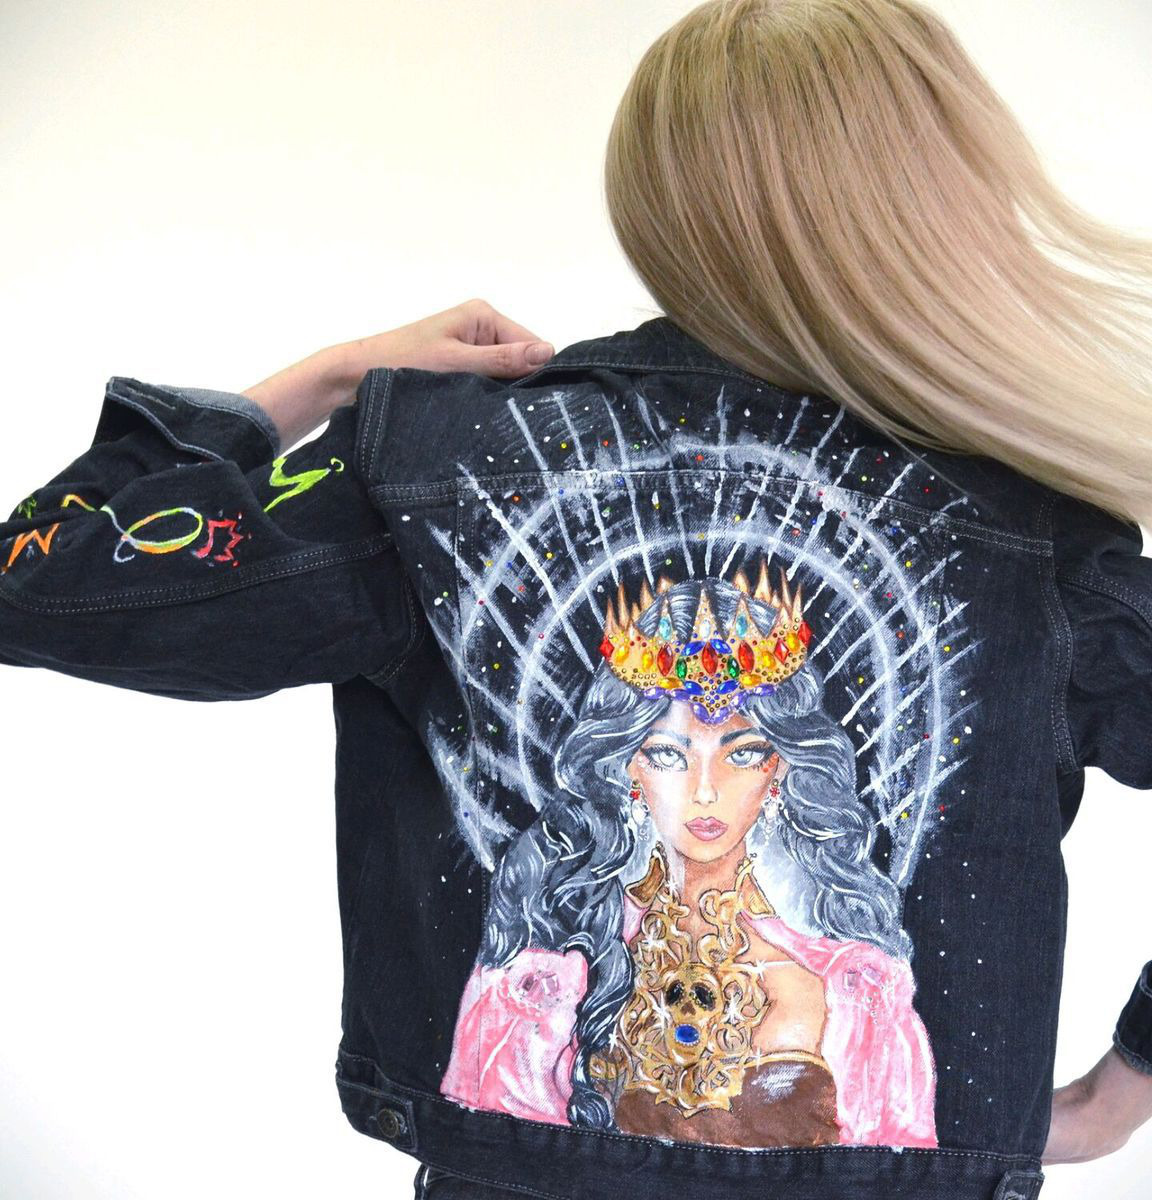 Джинсовая куртка с рисунком на спине, ручная роспись, кастомизация – купитьв интернет-магазине HobbyPortal.ru с доставкой